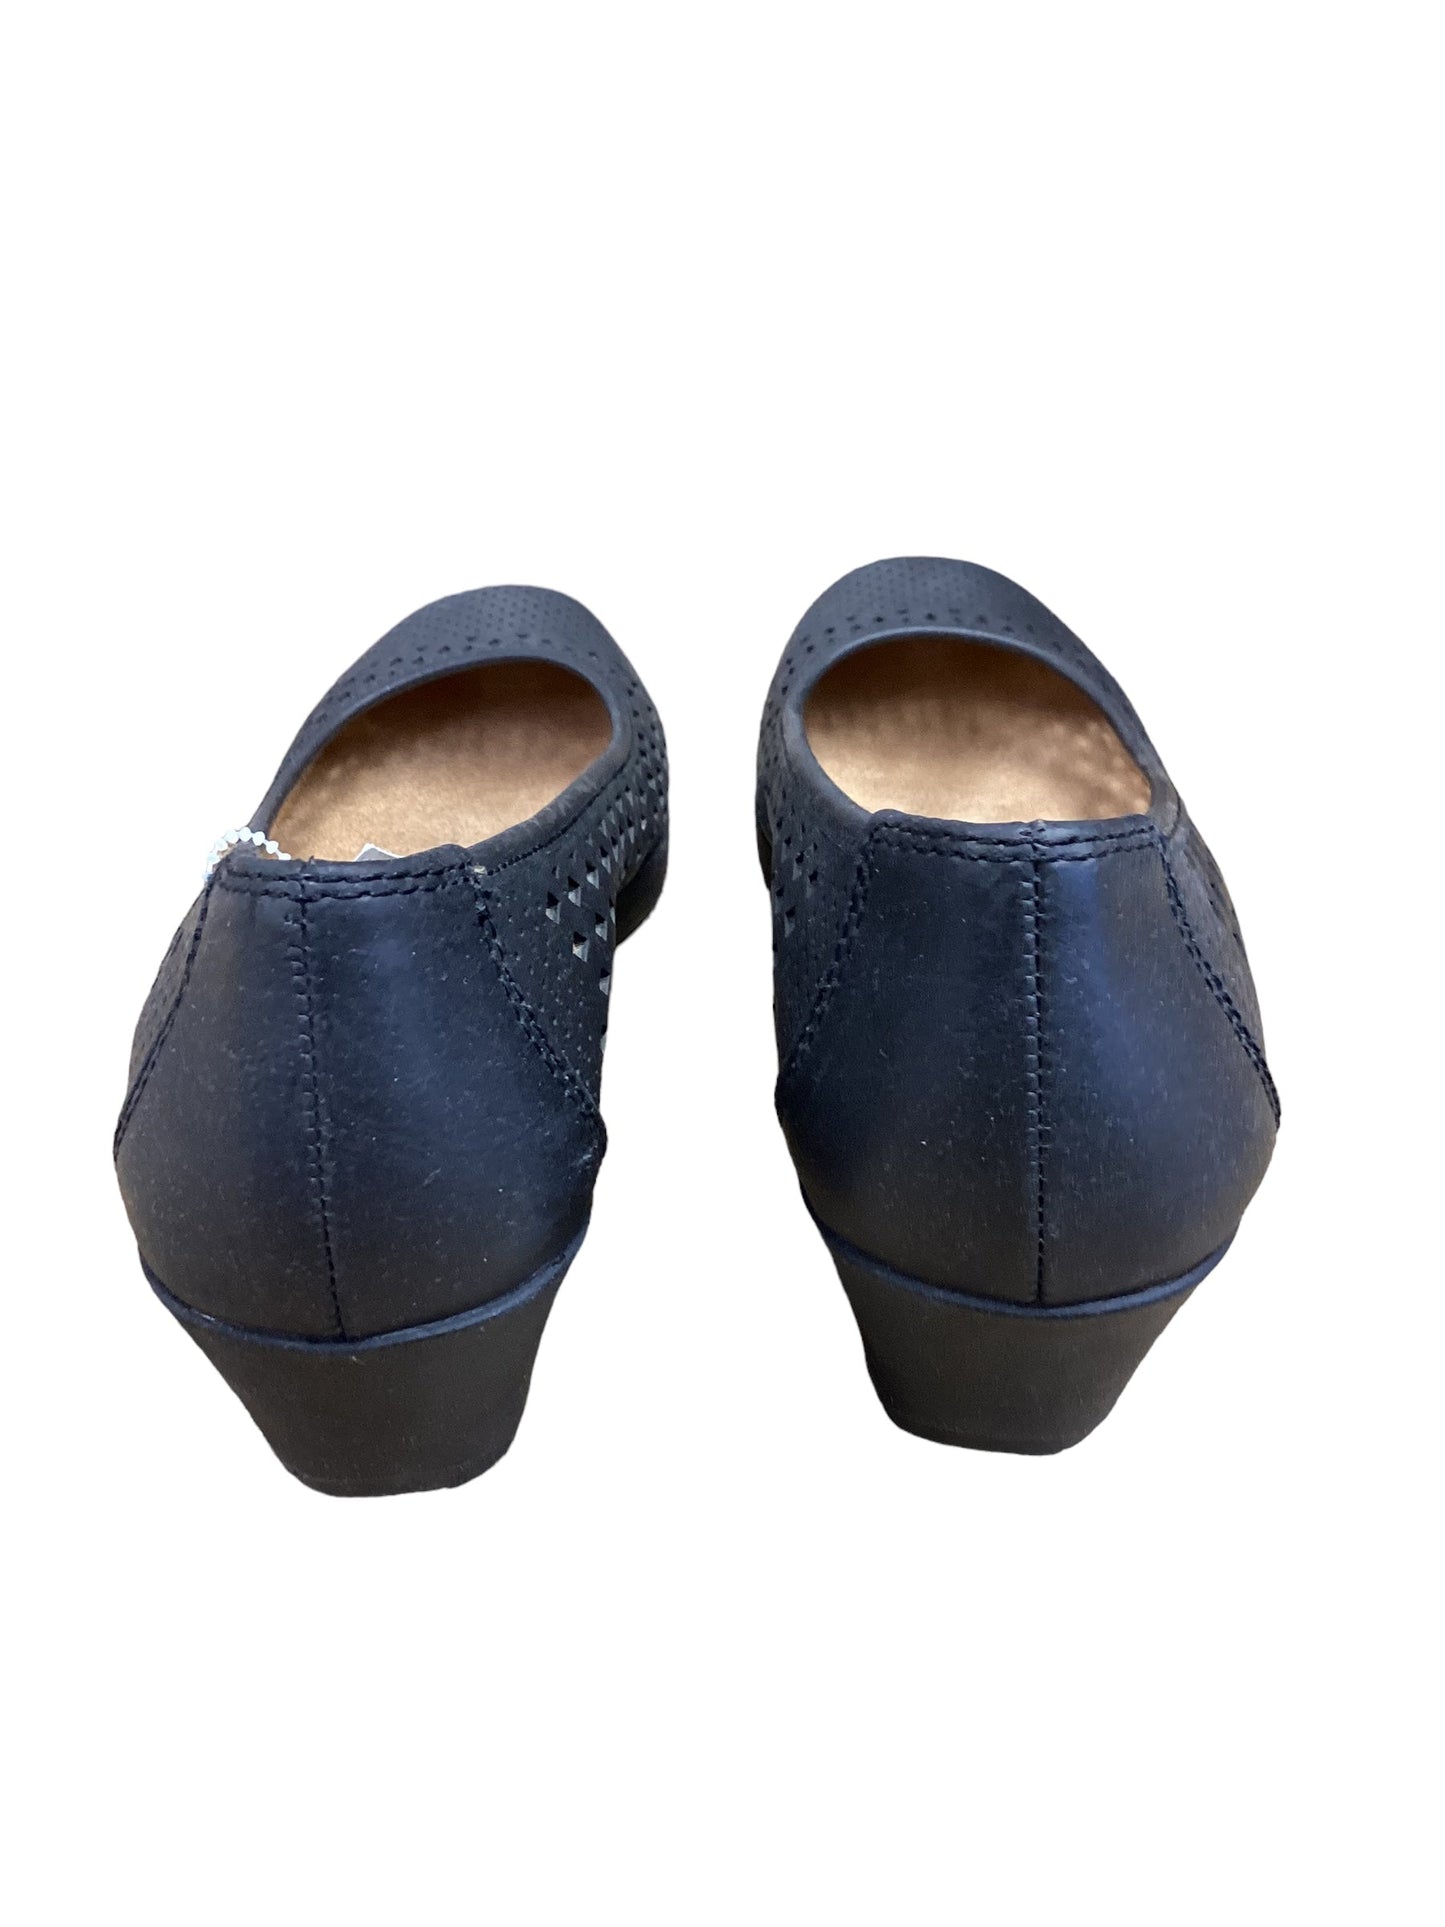 Black Shoes Flats Naturalizer, Size 6